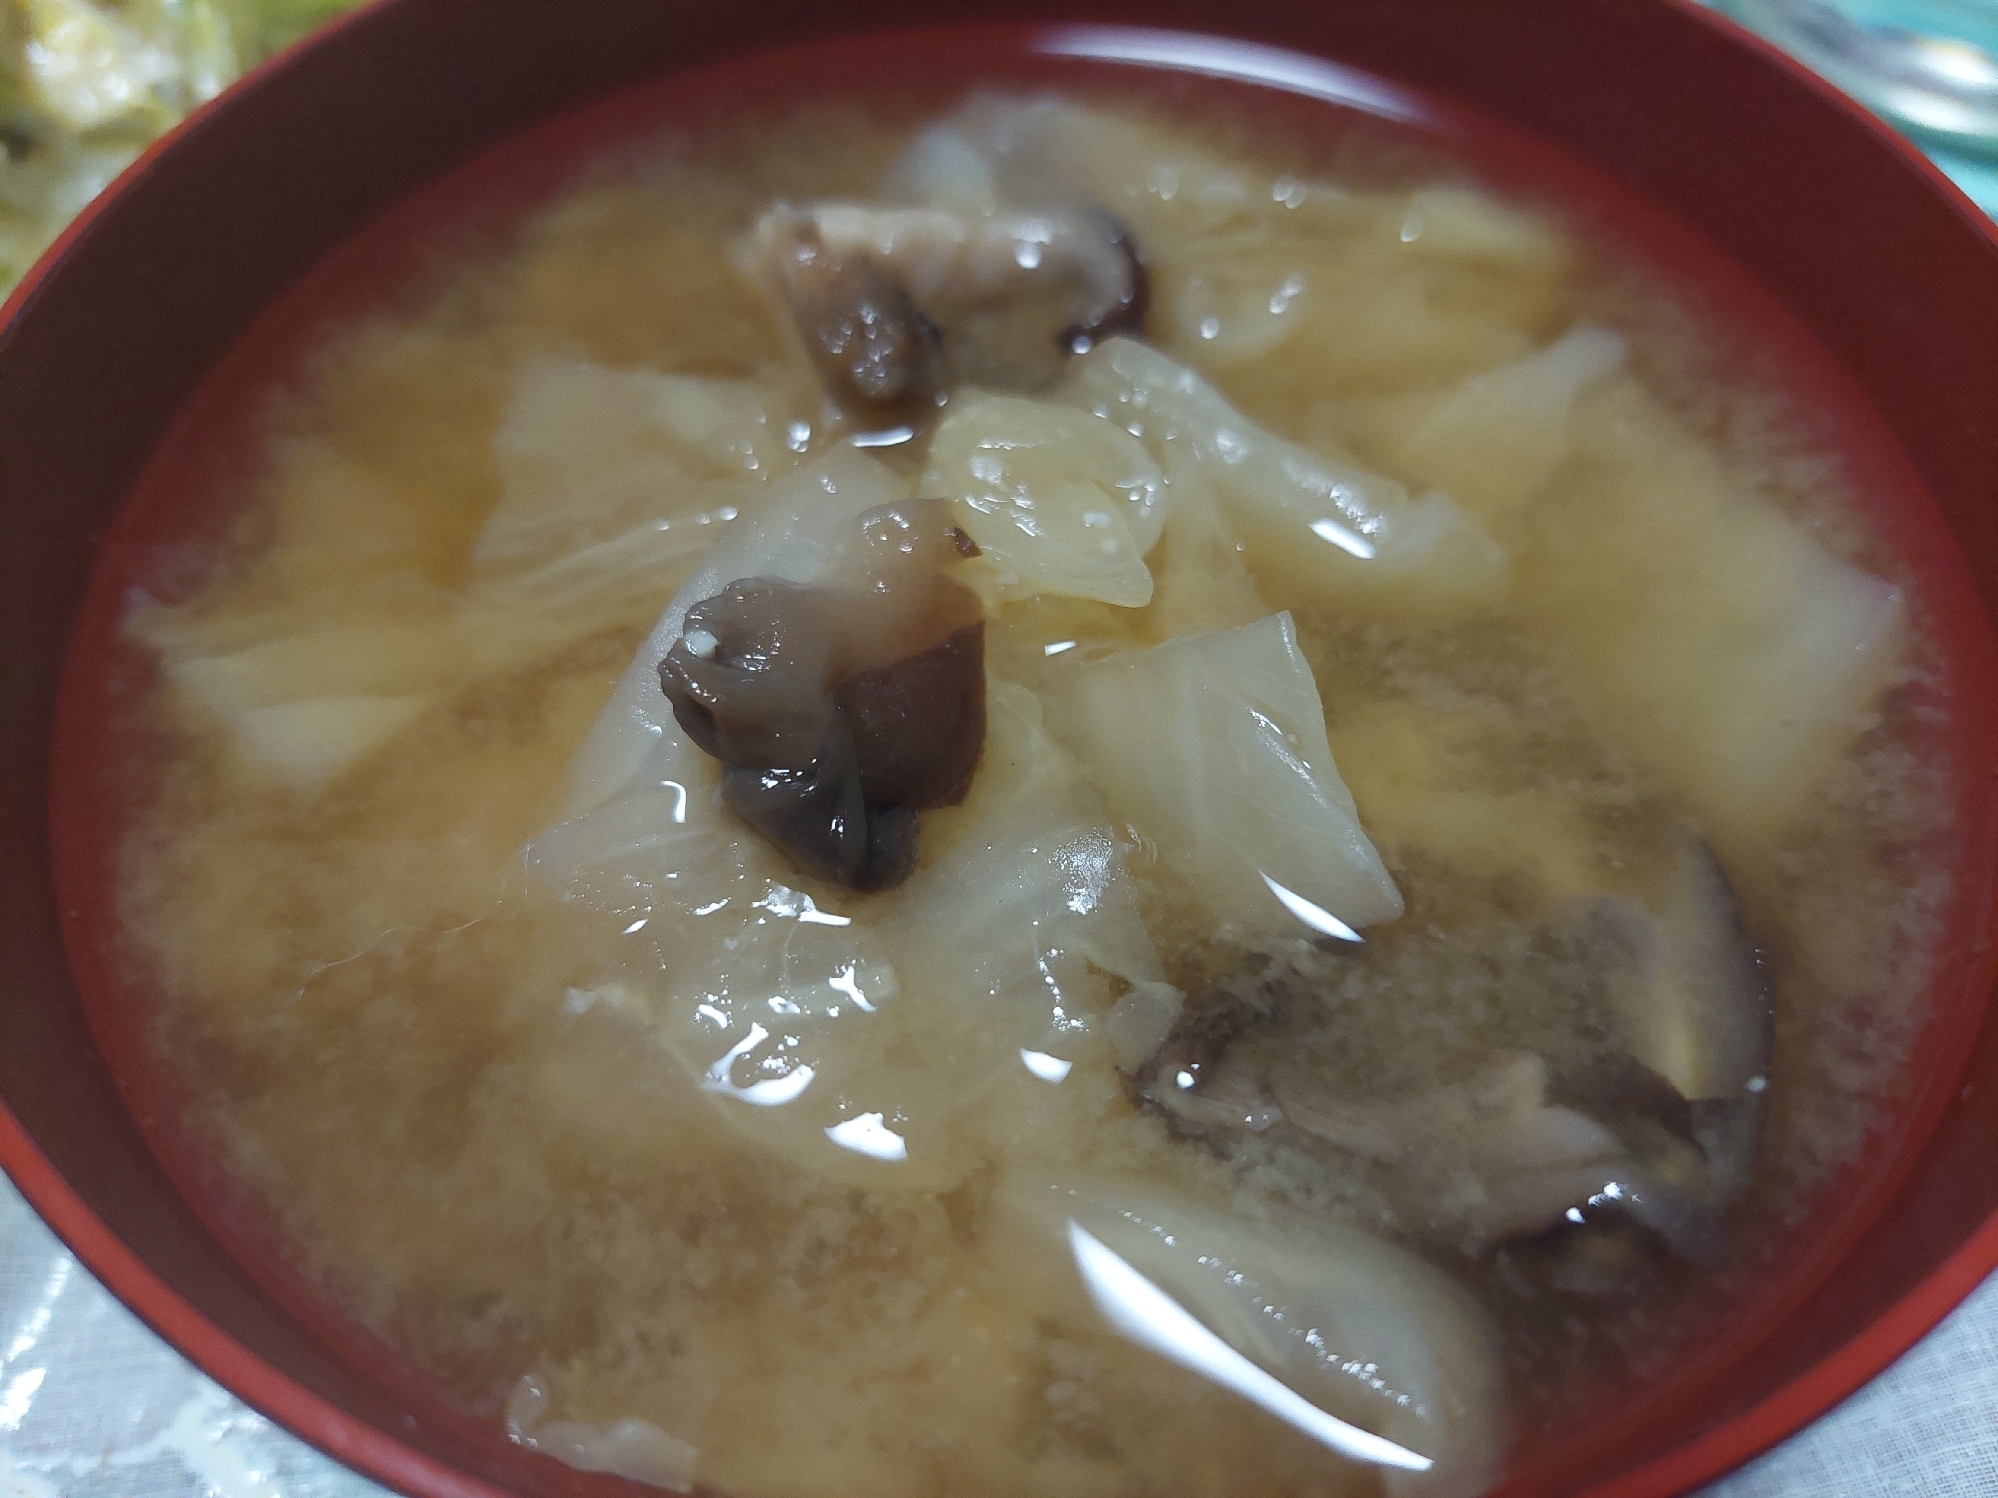 椎茸と白菜のお味噌汁